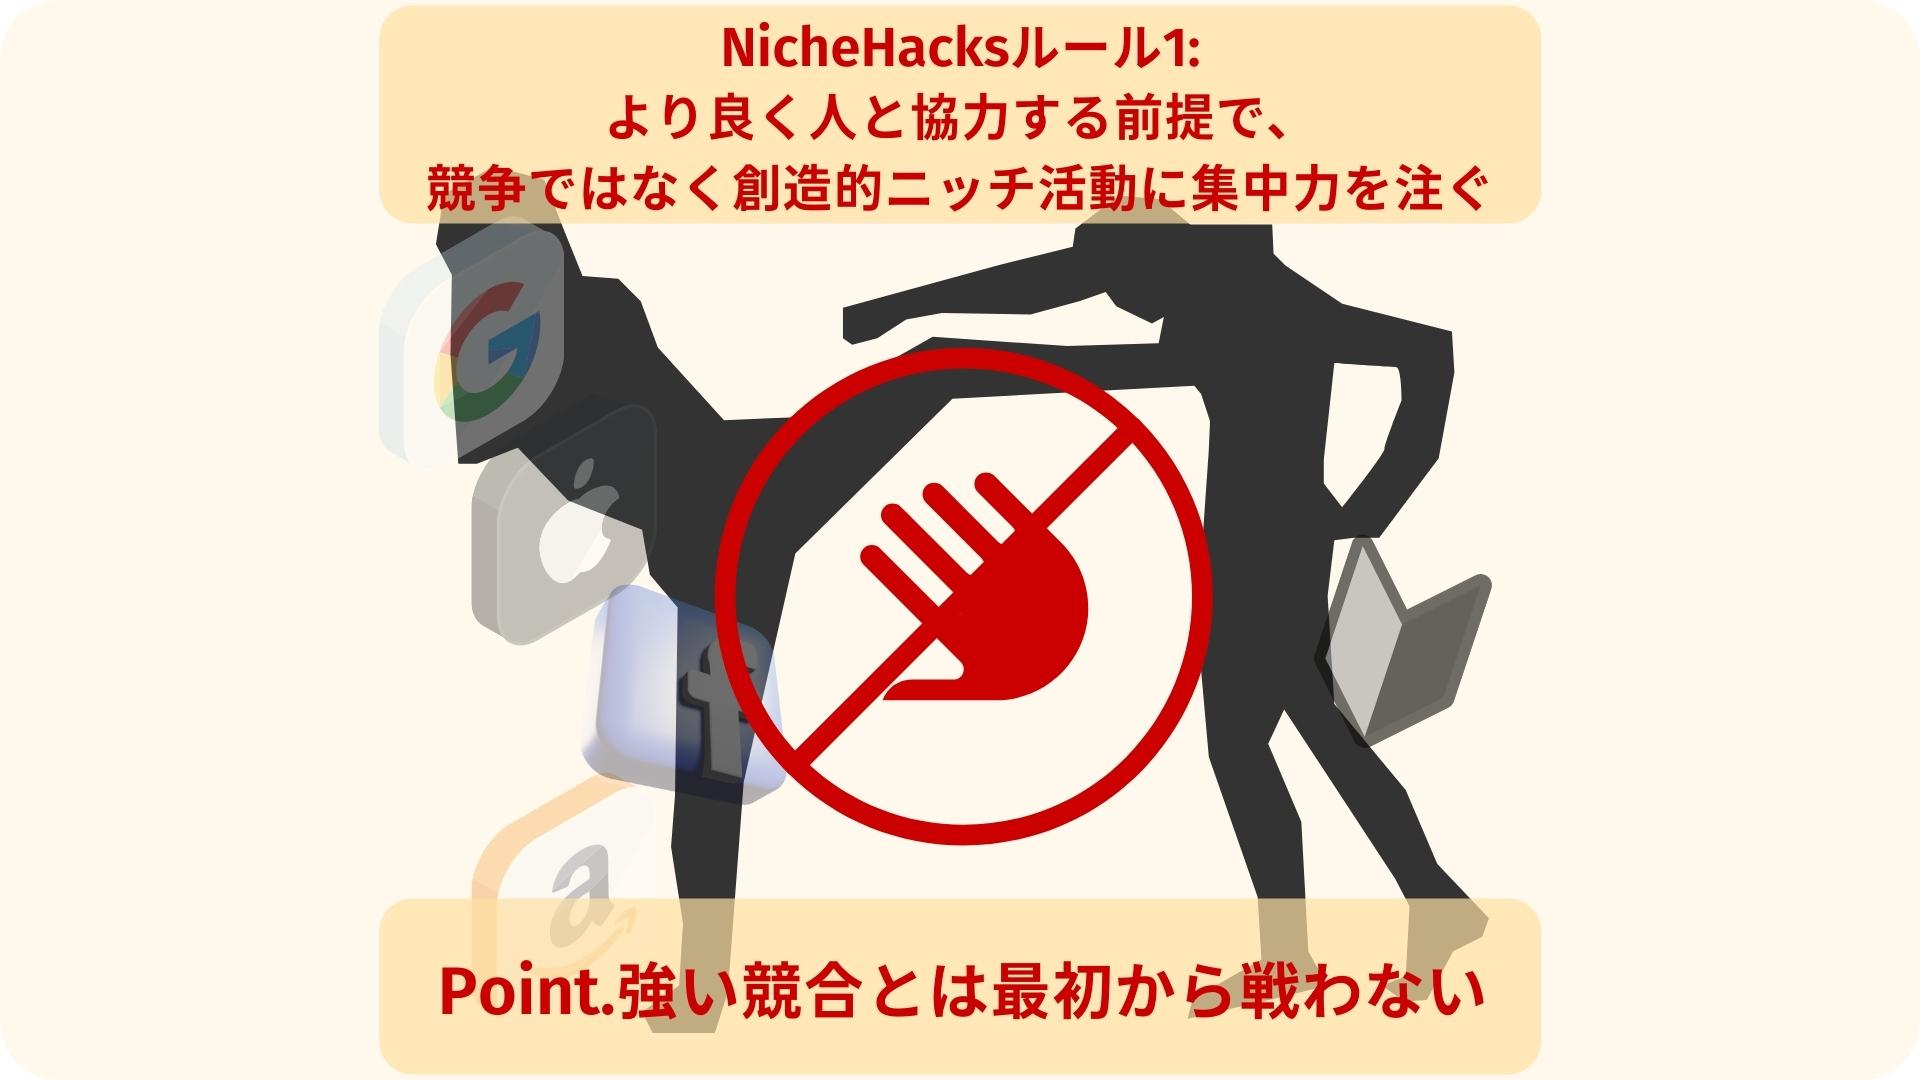 NicheHacks（ニッチハック）ルール01:より良く人と協力する前提で、競争ではなく創造的ニッチ活動に集中力を注ぐ